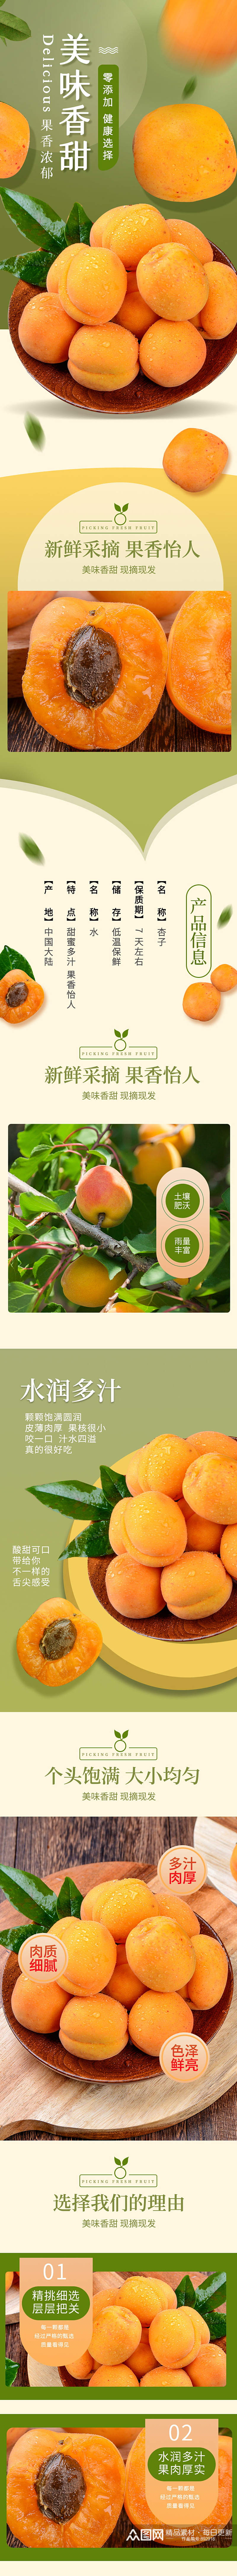 淘宝天猫美食水果杏子详情素材